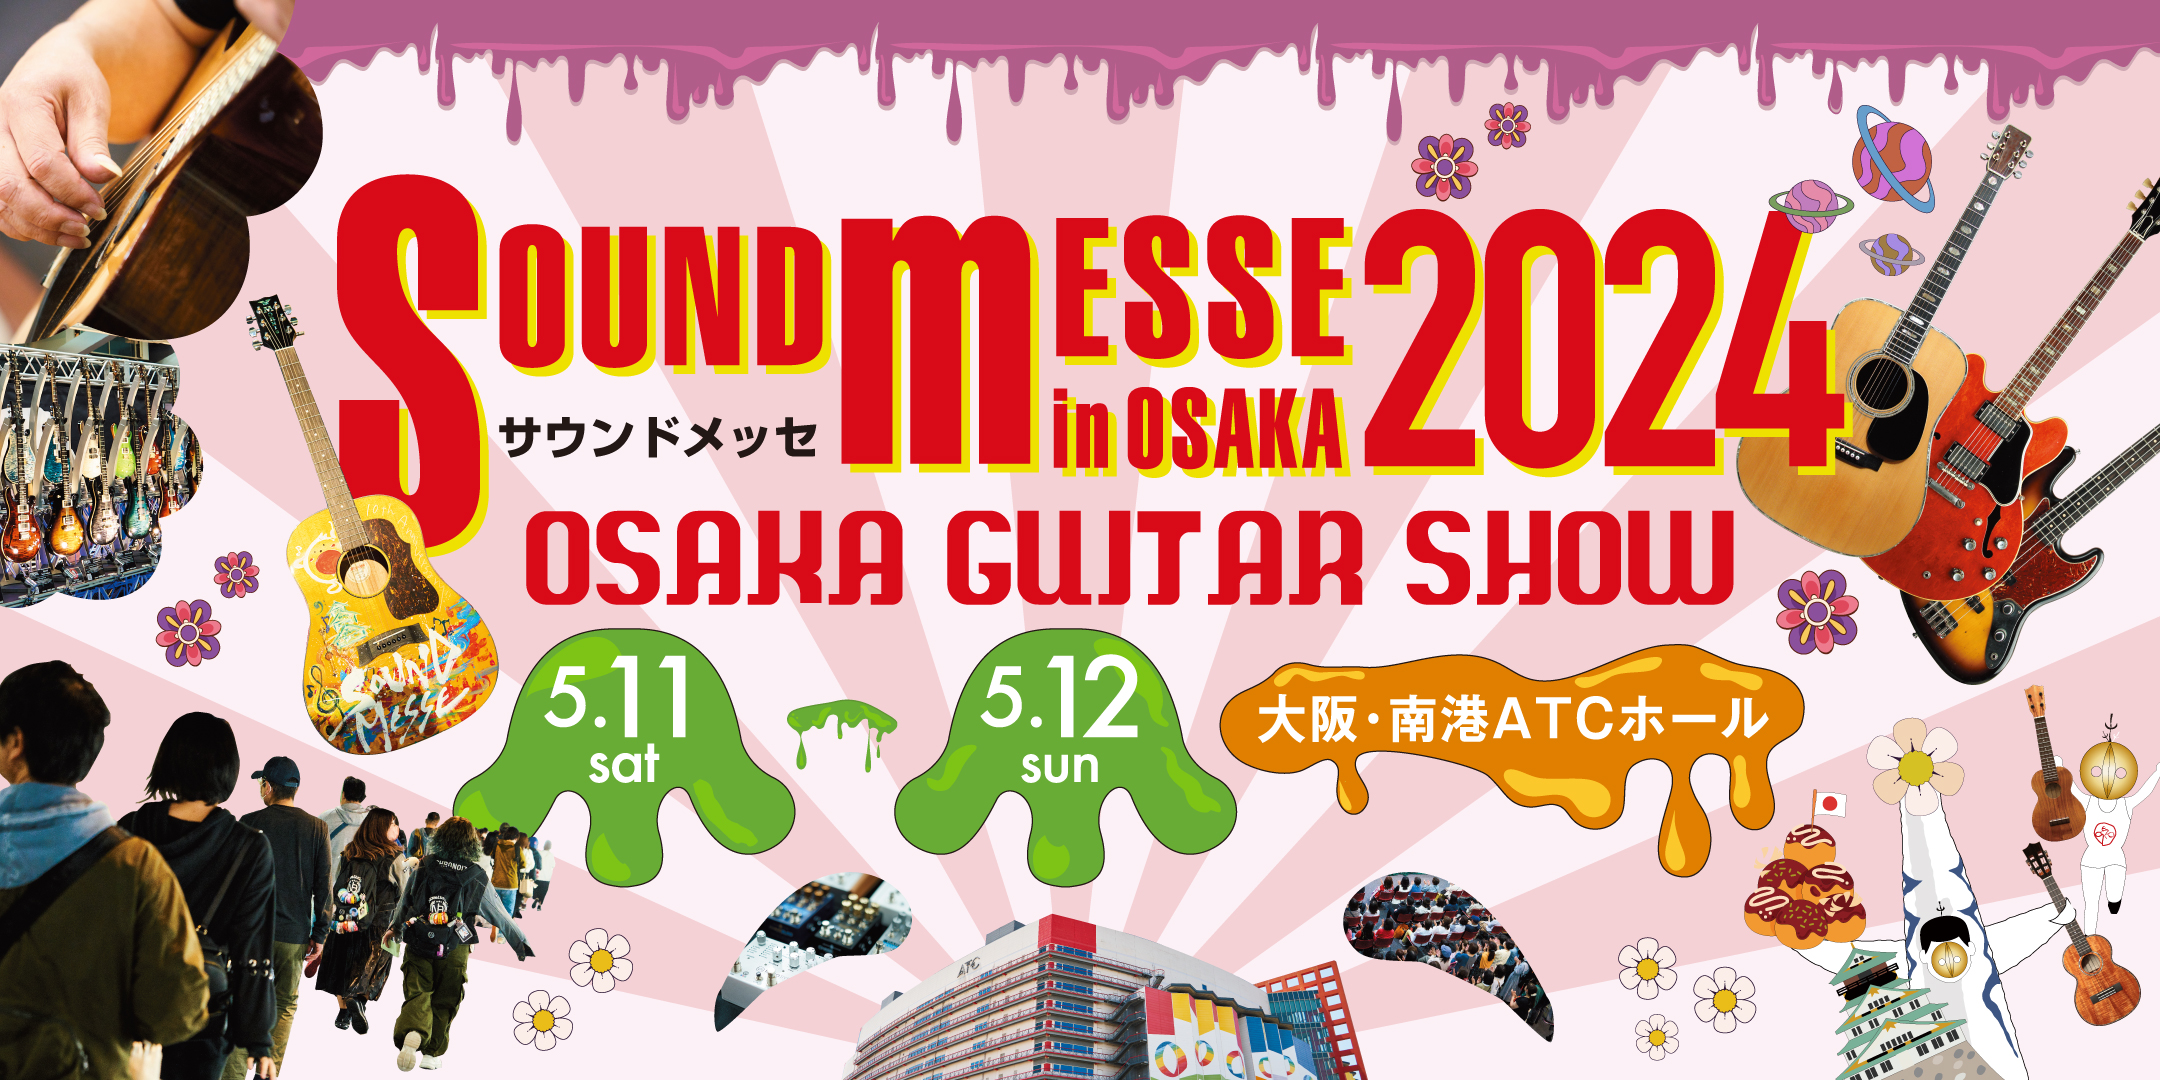 5/9~13までの間、「大阪サウンドメッセ 2024」に出展のため発送ができません。